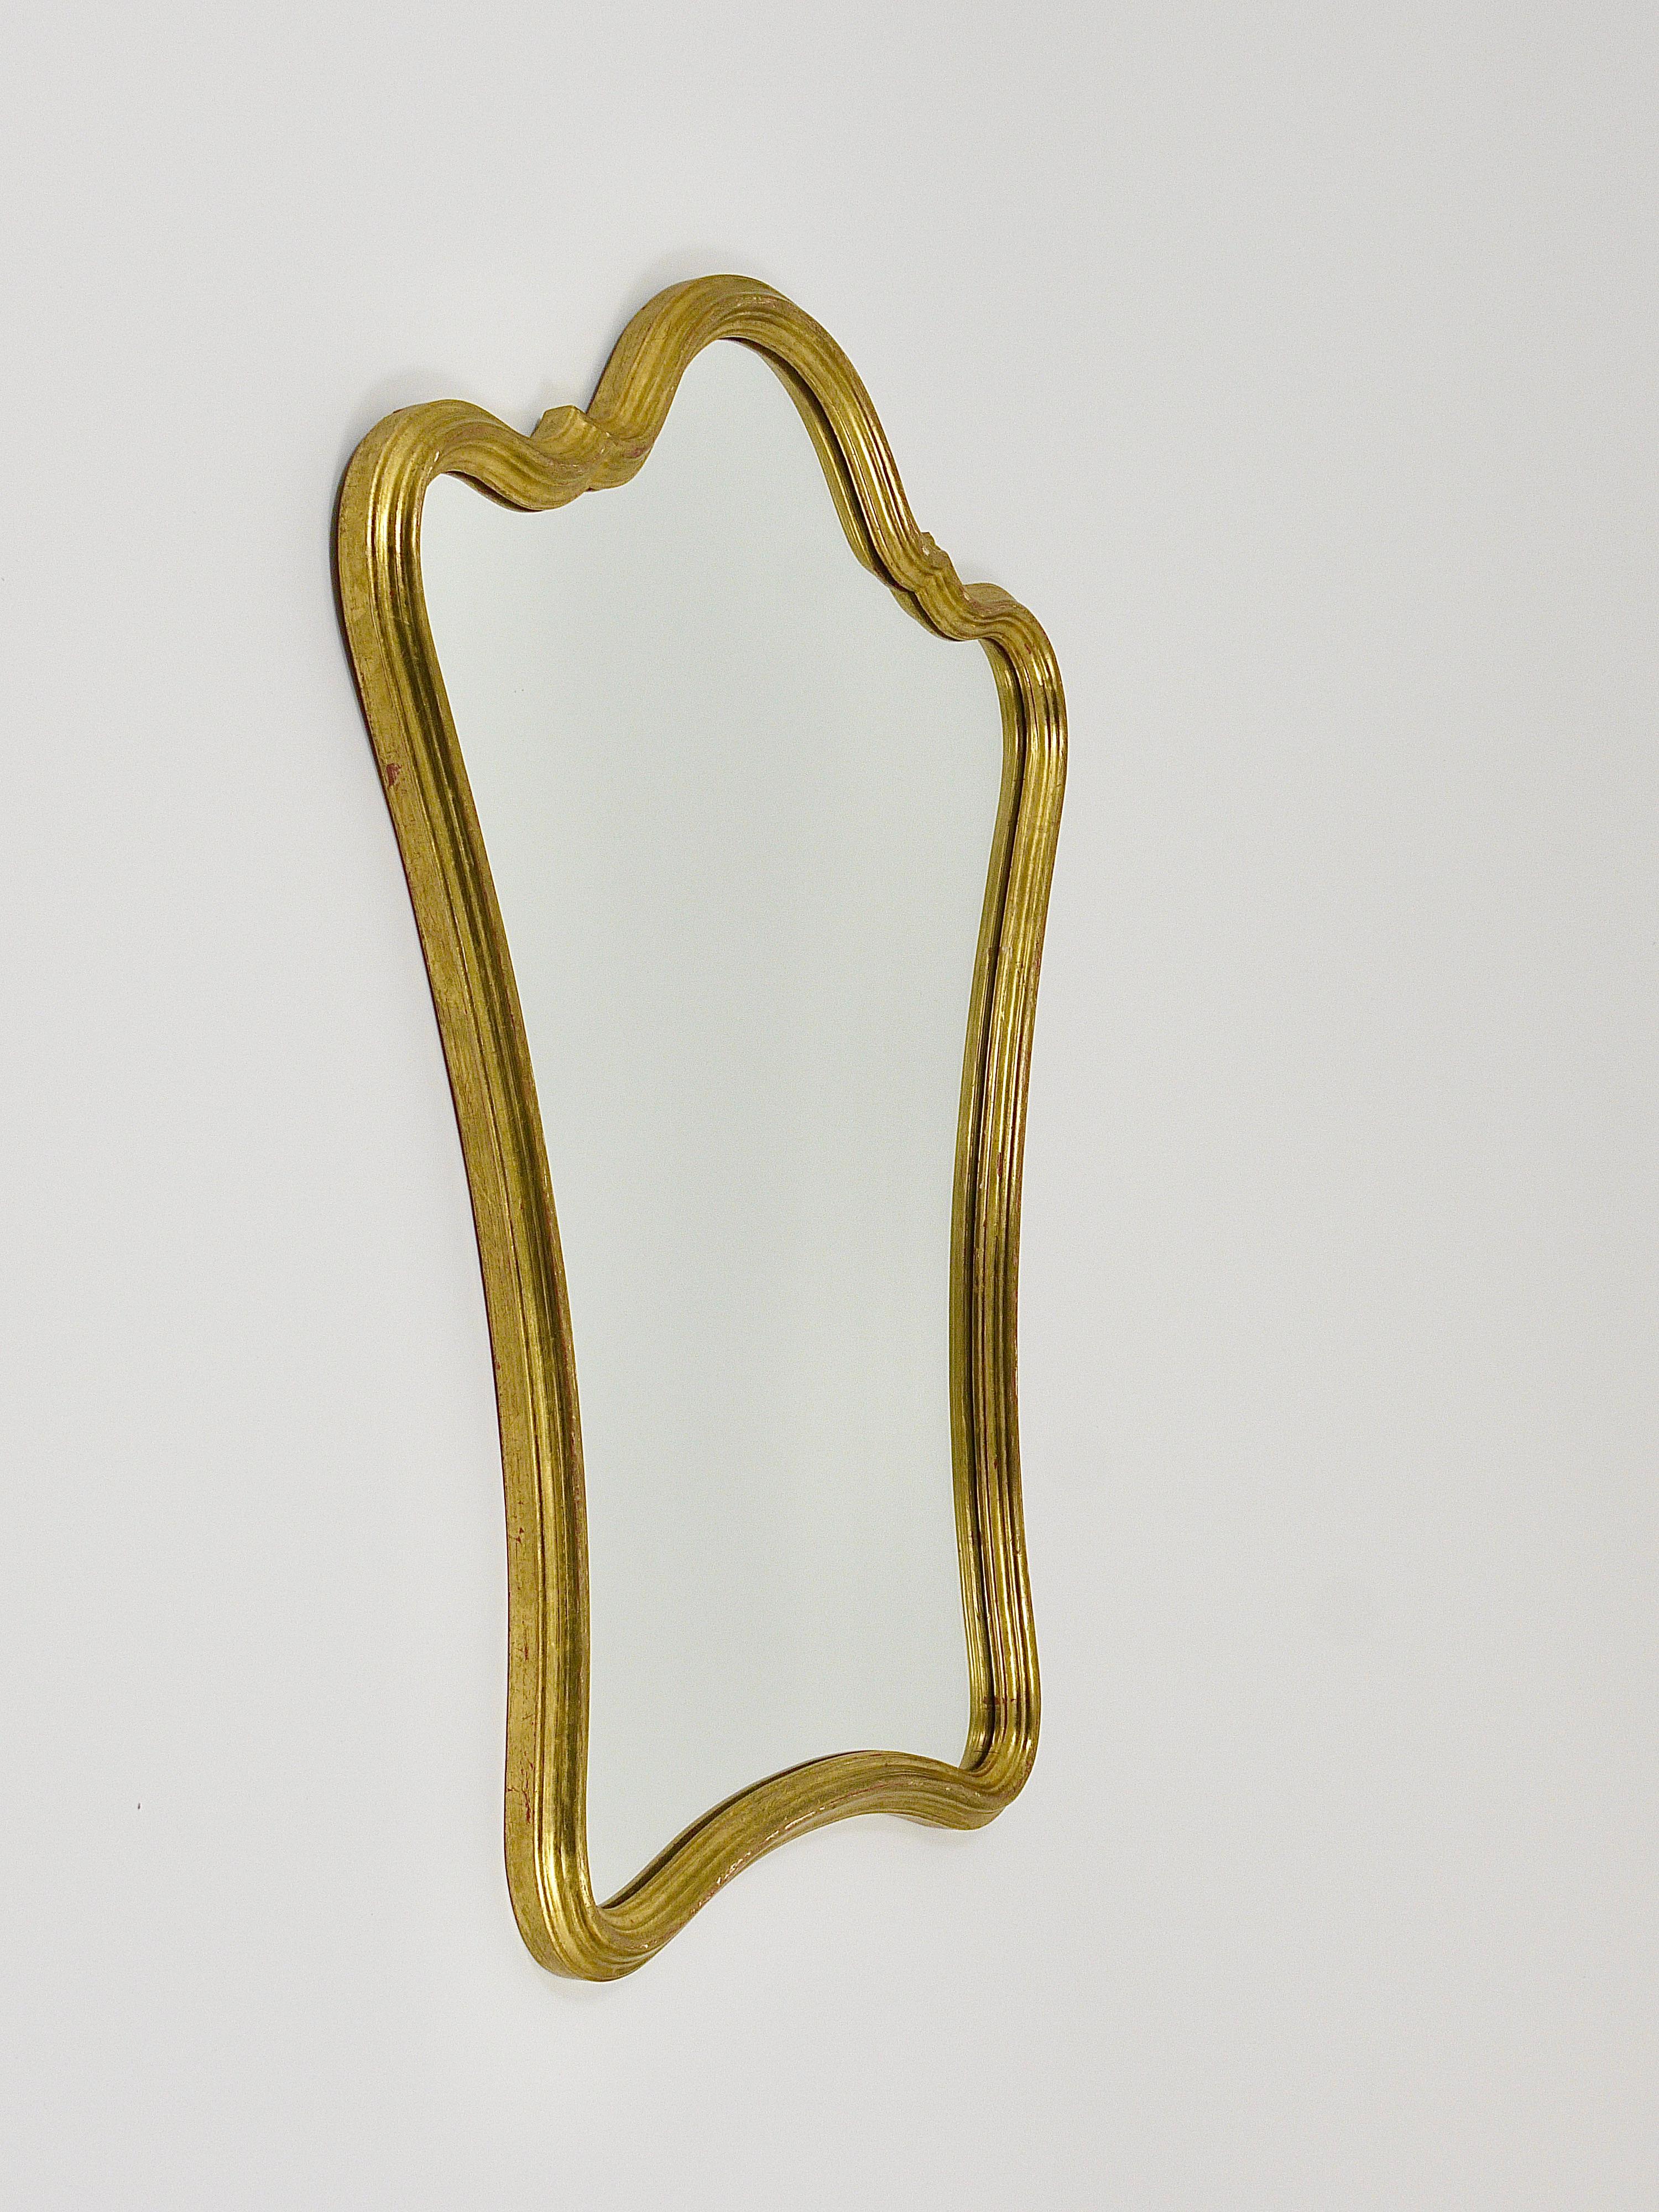 Charmant miroir mural moderniste italien du milieu du siècle, fabriqué dans les années 1950 par Chelini C. C. N. Firenze à Florence, Toscane, Italie. Il est fabriqué à la main en bois avec une finition à la feuille d'or. Le cadre présente une belle